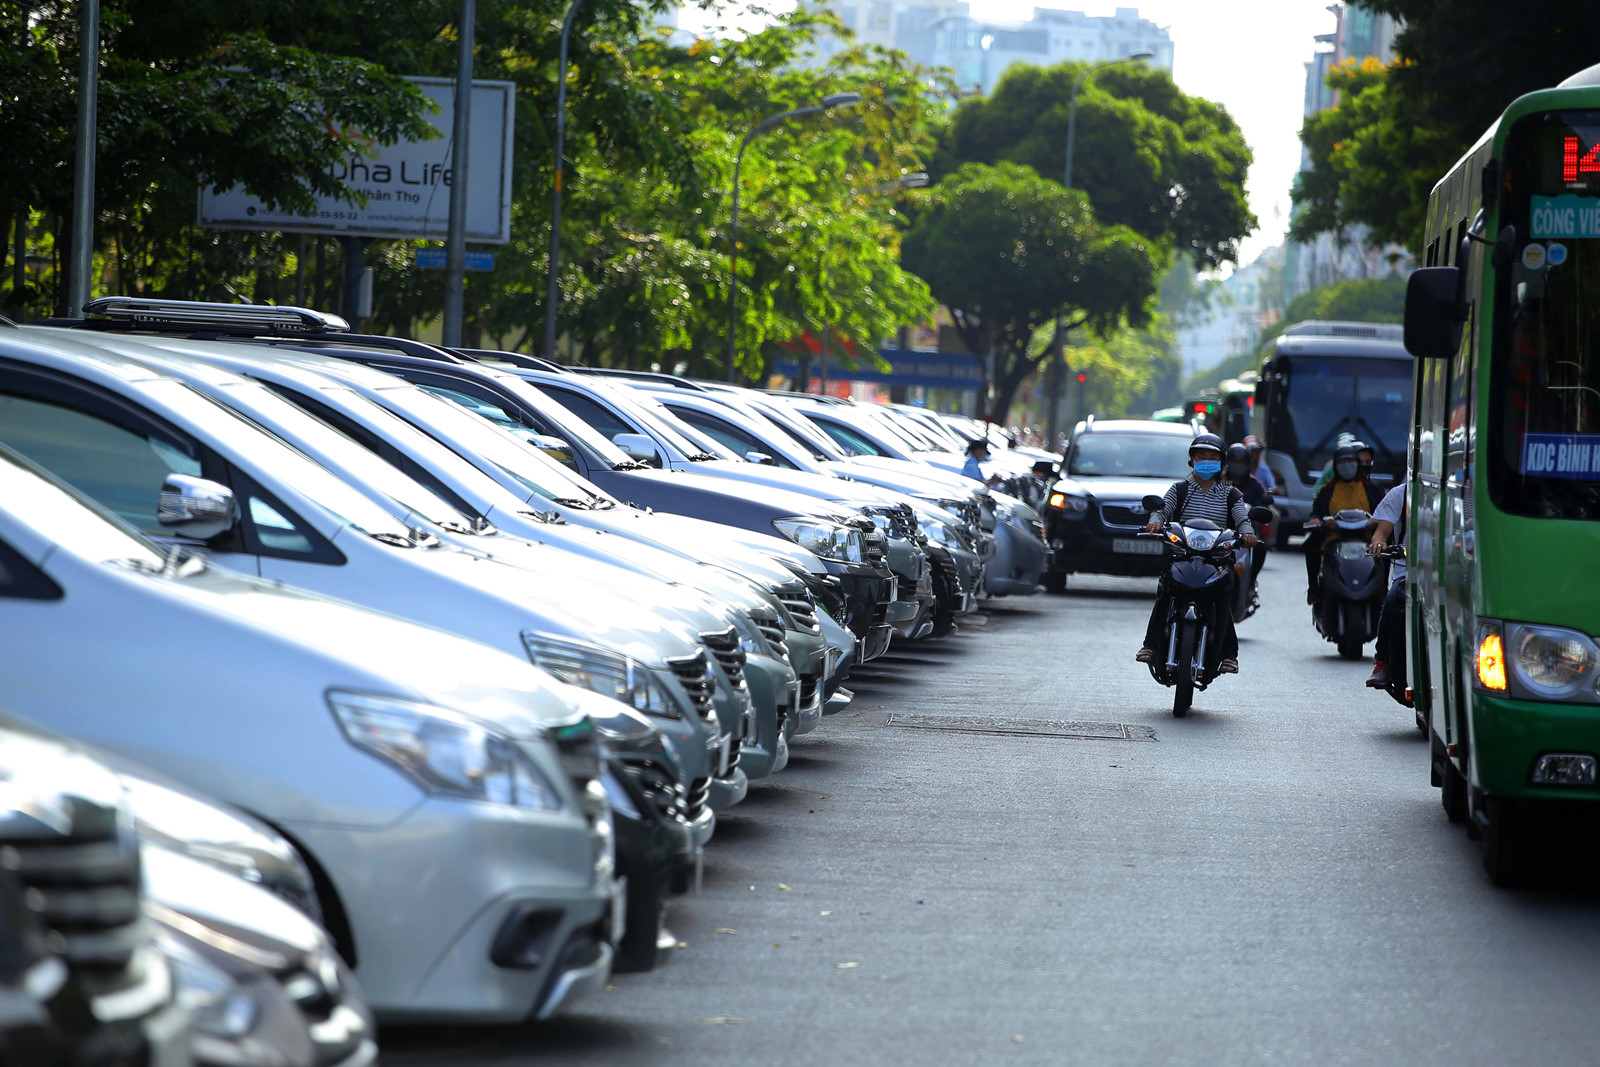 vấn đề đặt ra quan trọng nhất là thu phí xe có chắc chắn giảm được ùn tắc như các lãnh đạo Sở giao thông vận tải nói?